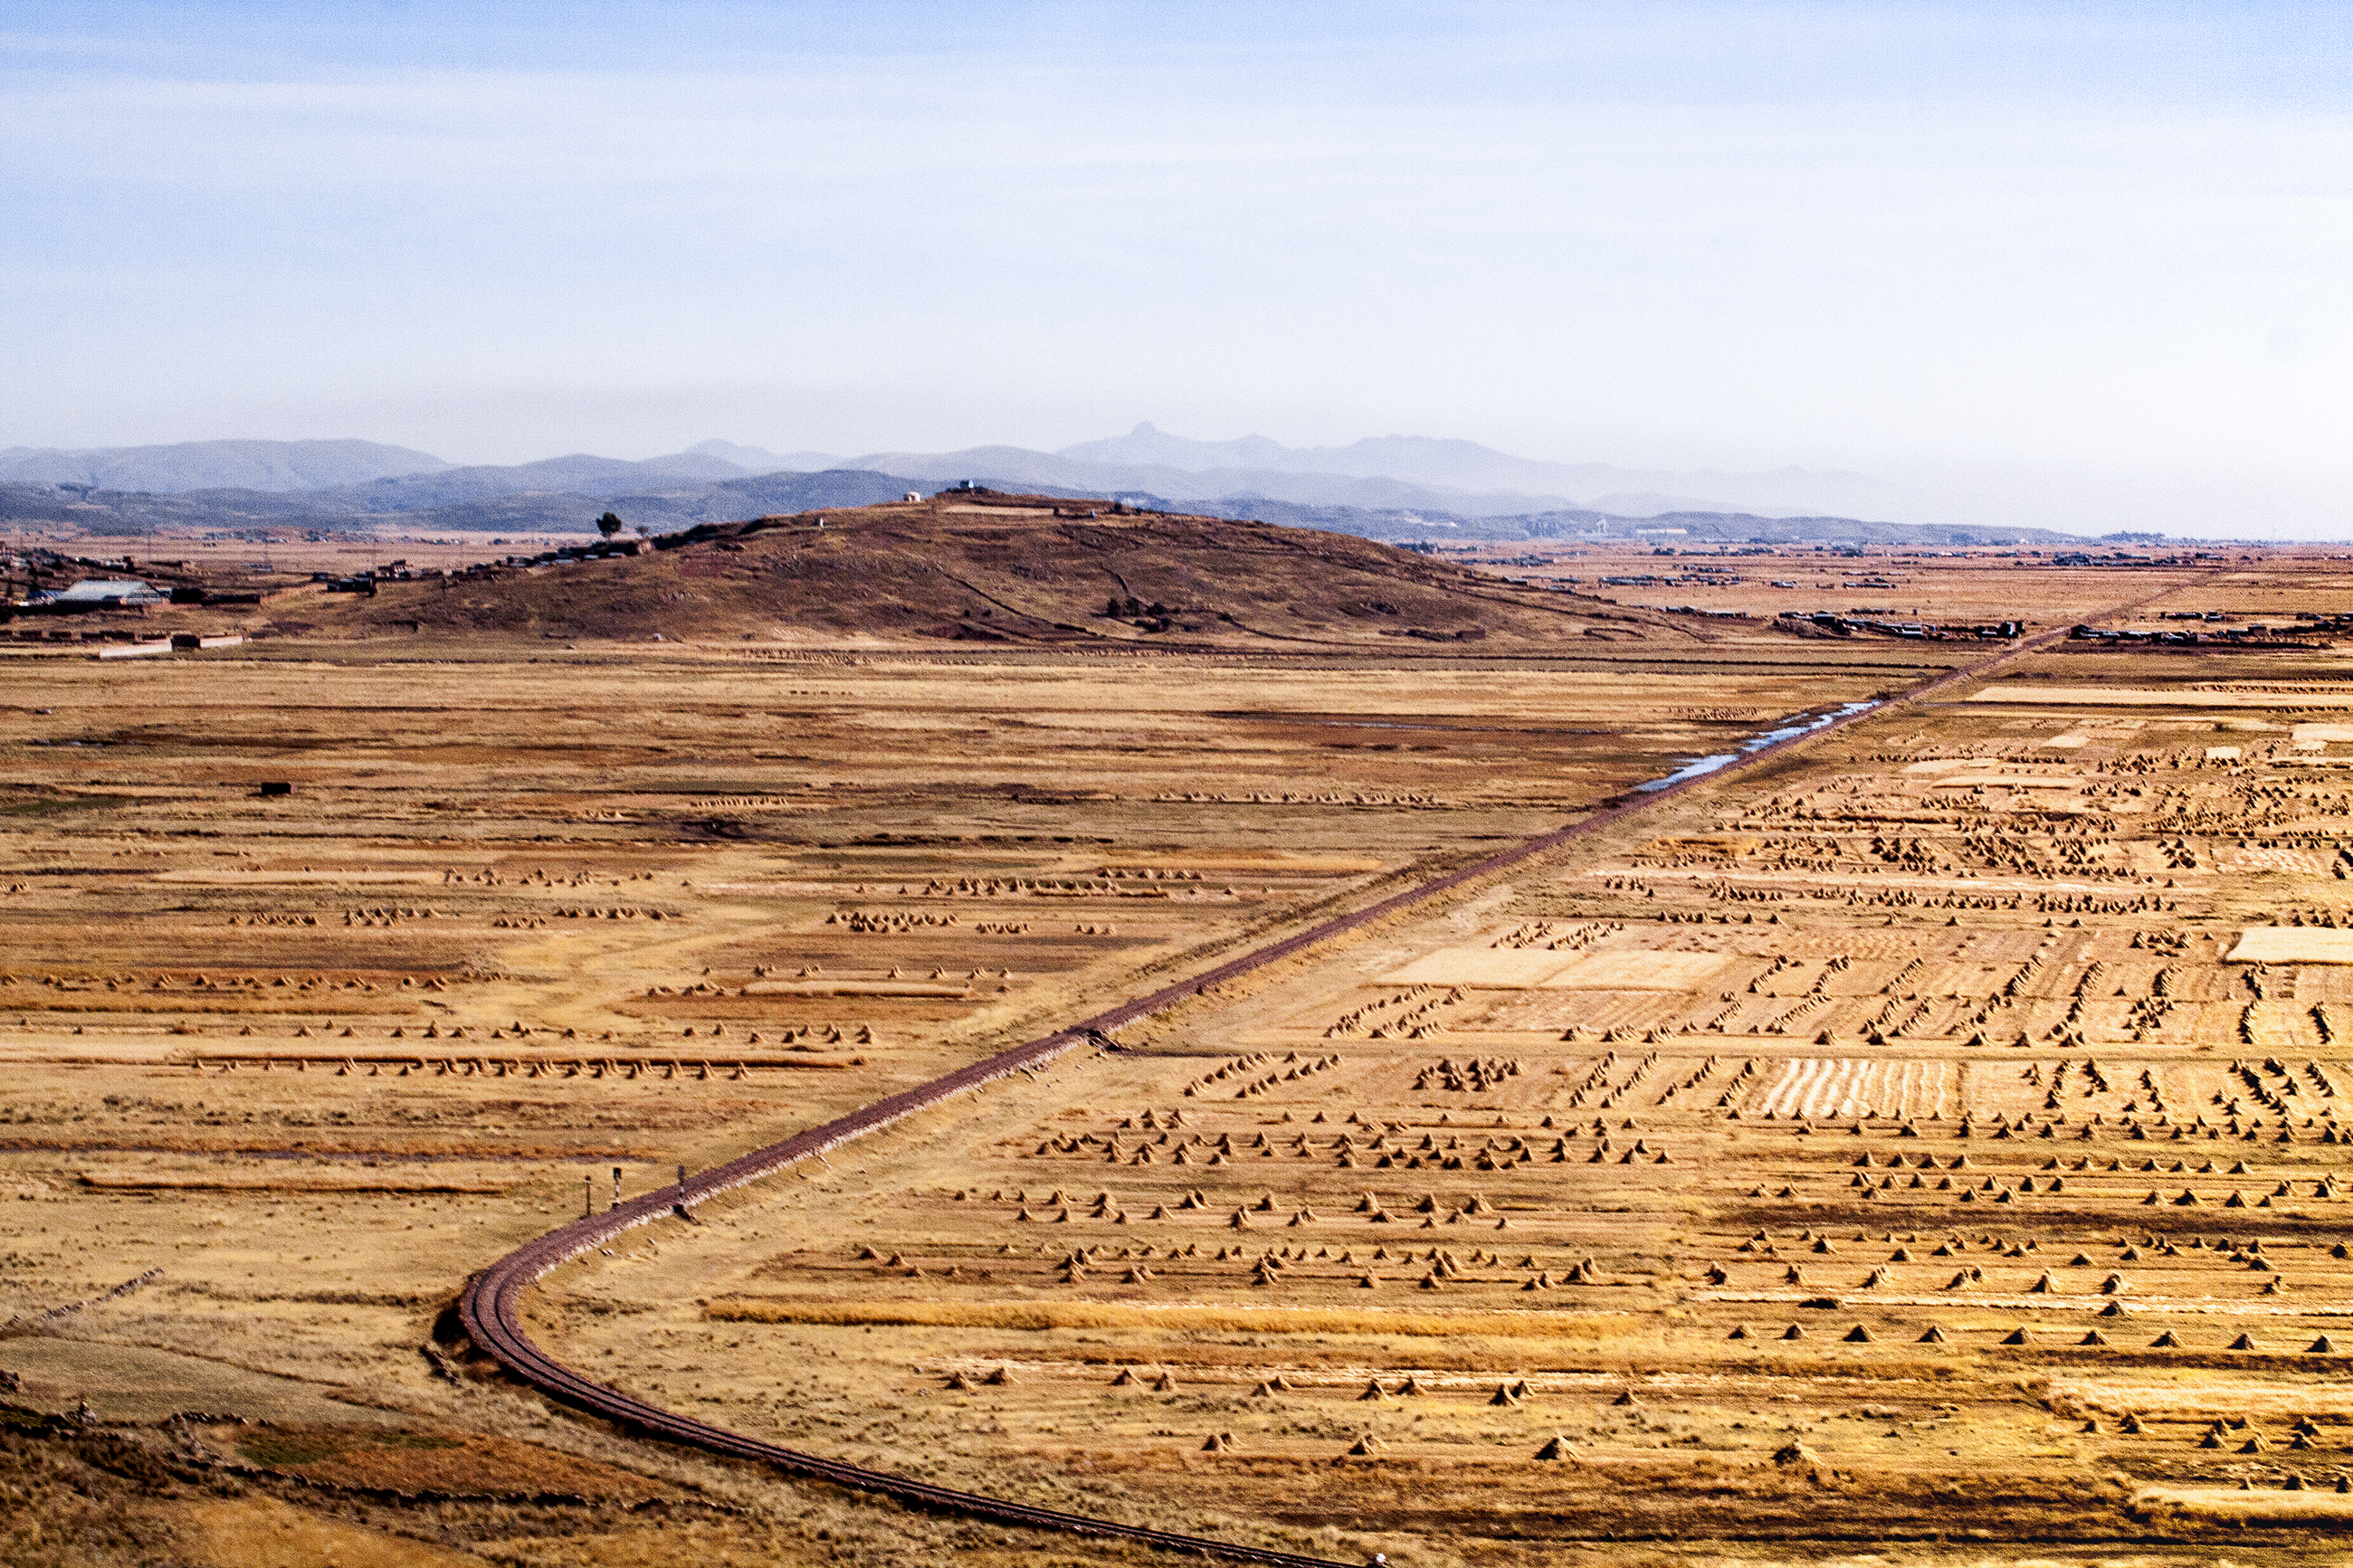 Vista del valle Carretera a Juliaca, Puno, Perú